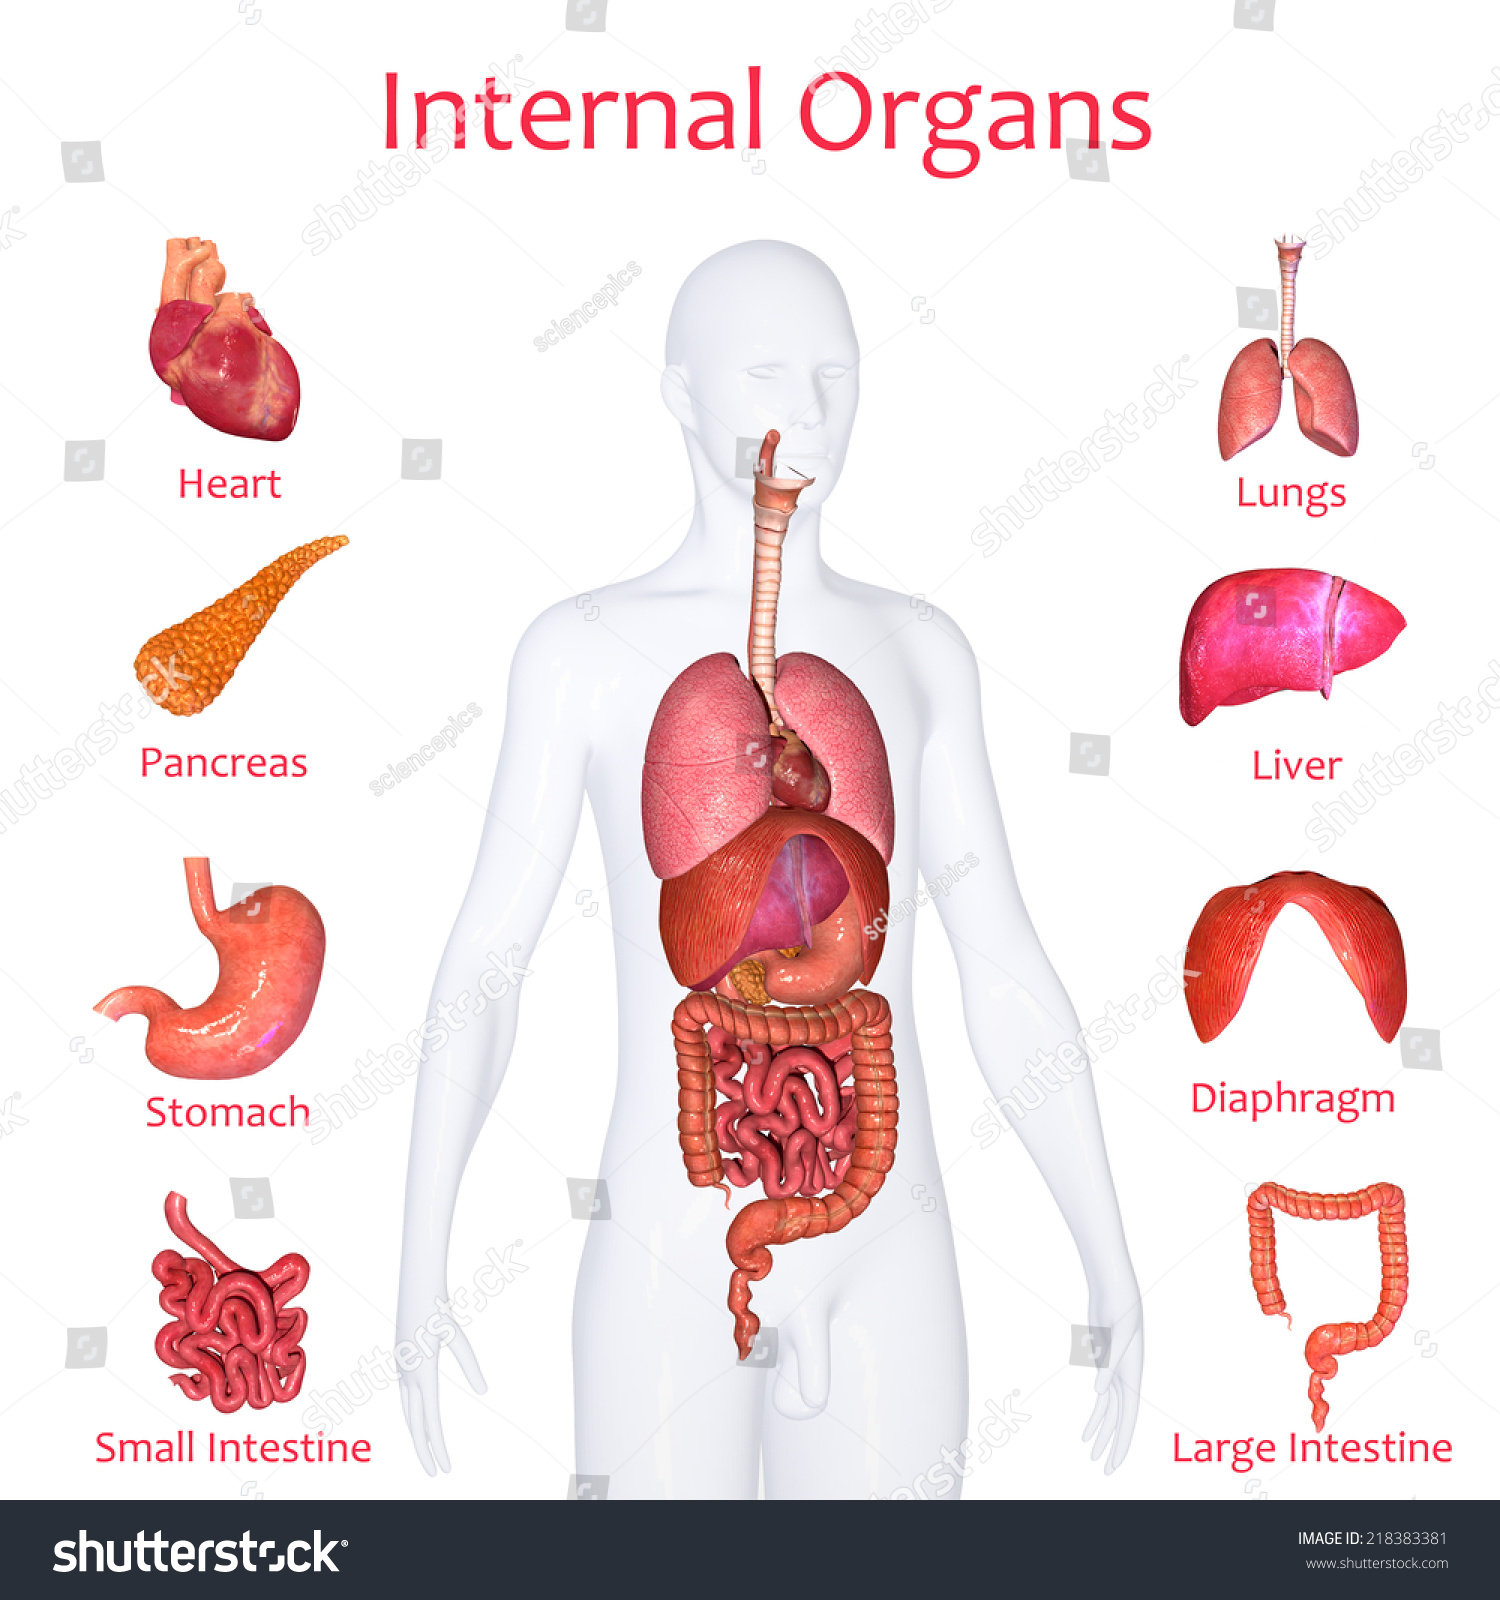 Internal Organs Stock Illustration 218383381 - Shutterstock